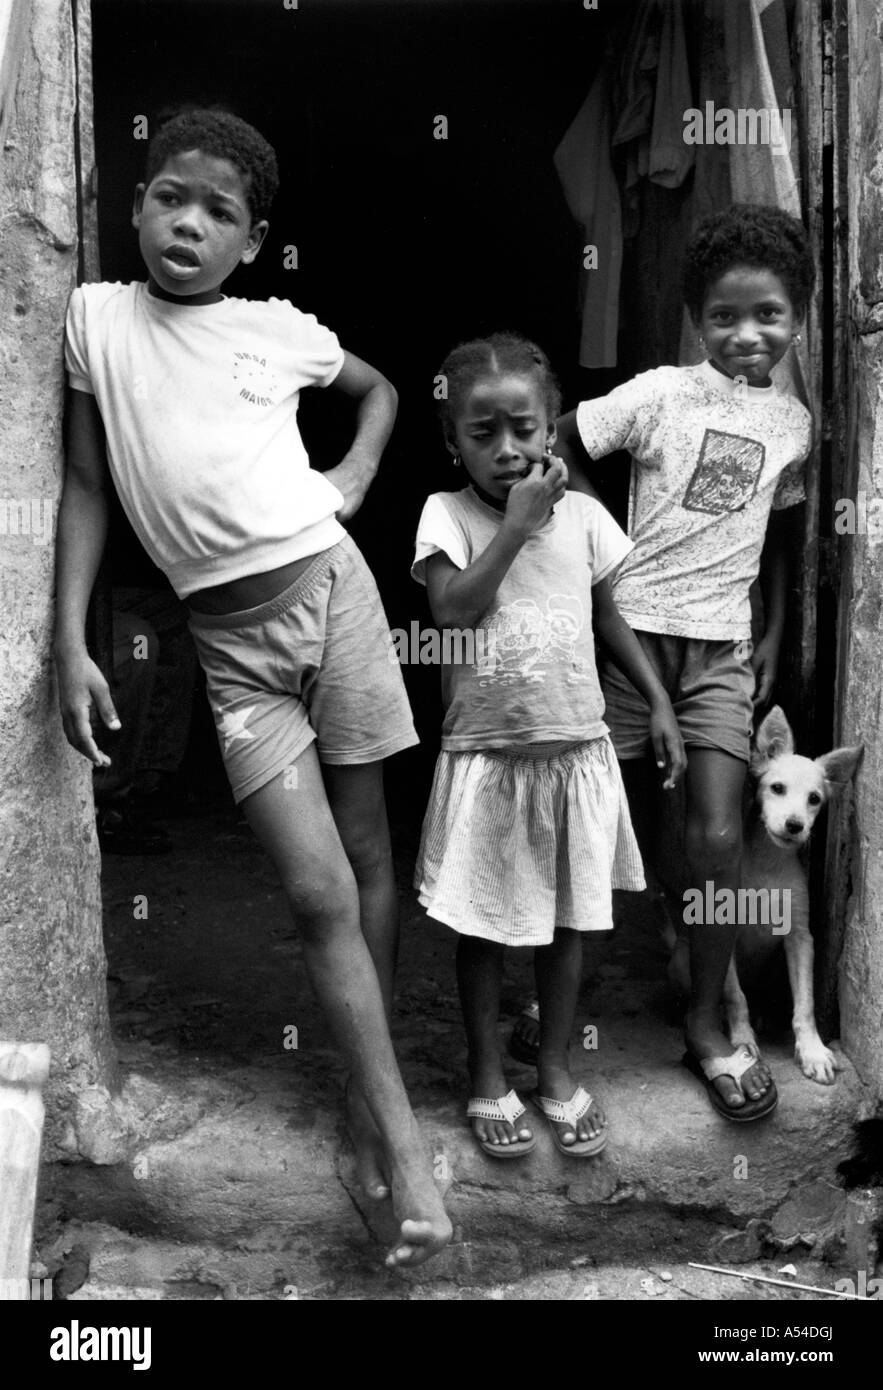 Painet hn1959 544 in bianco e nero bambini salvador brasile paese nazione in via di sviluppo meno sviluppati dal punto di vista economico la cultura Foto Stock